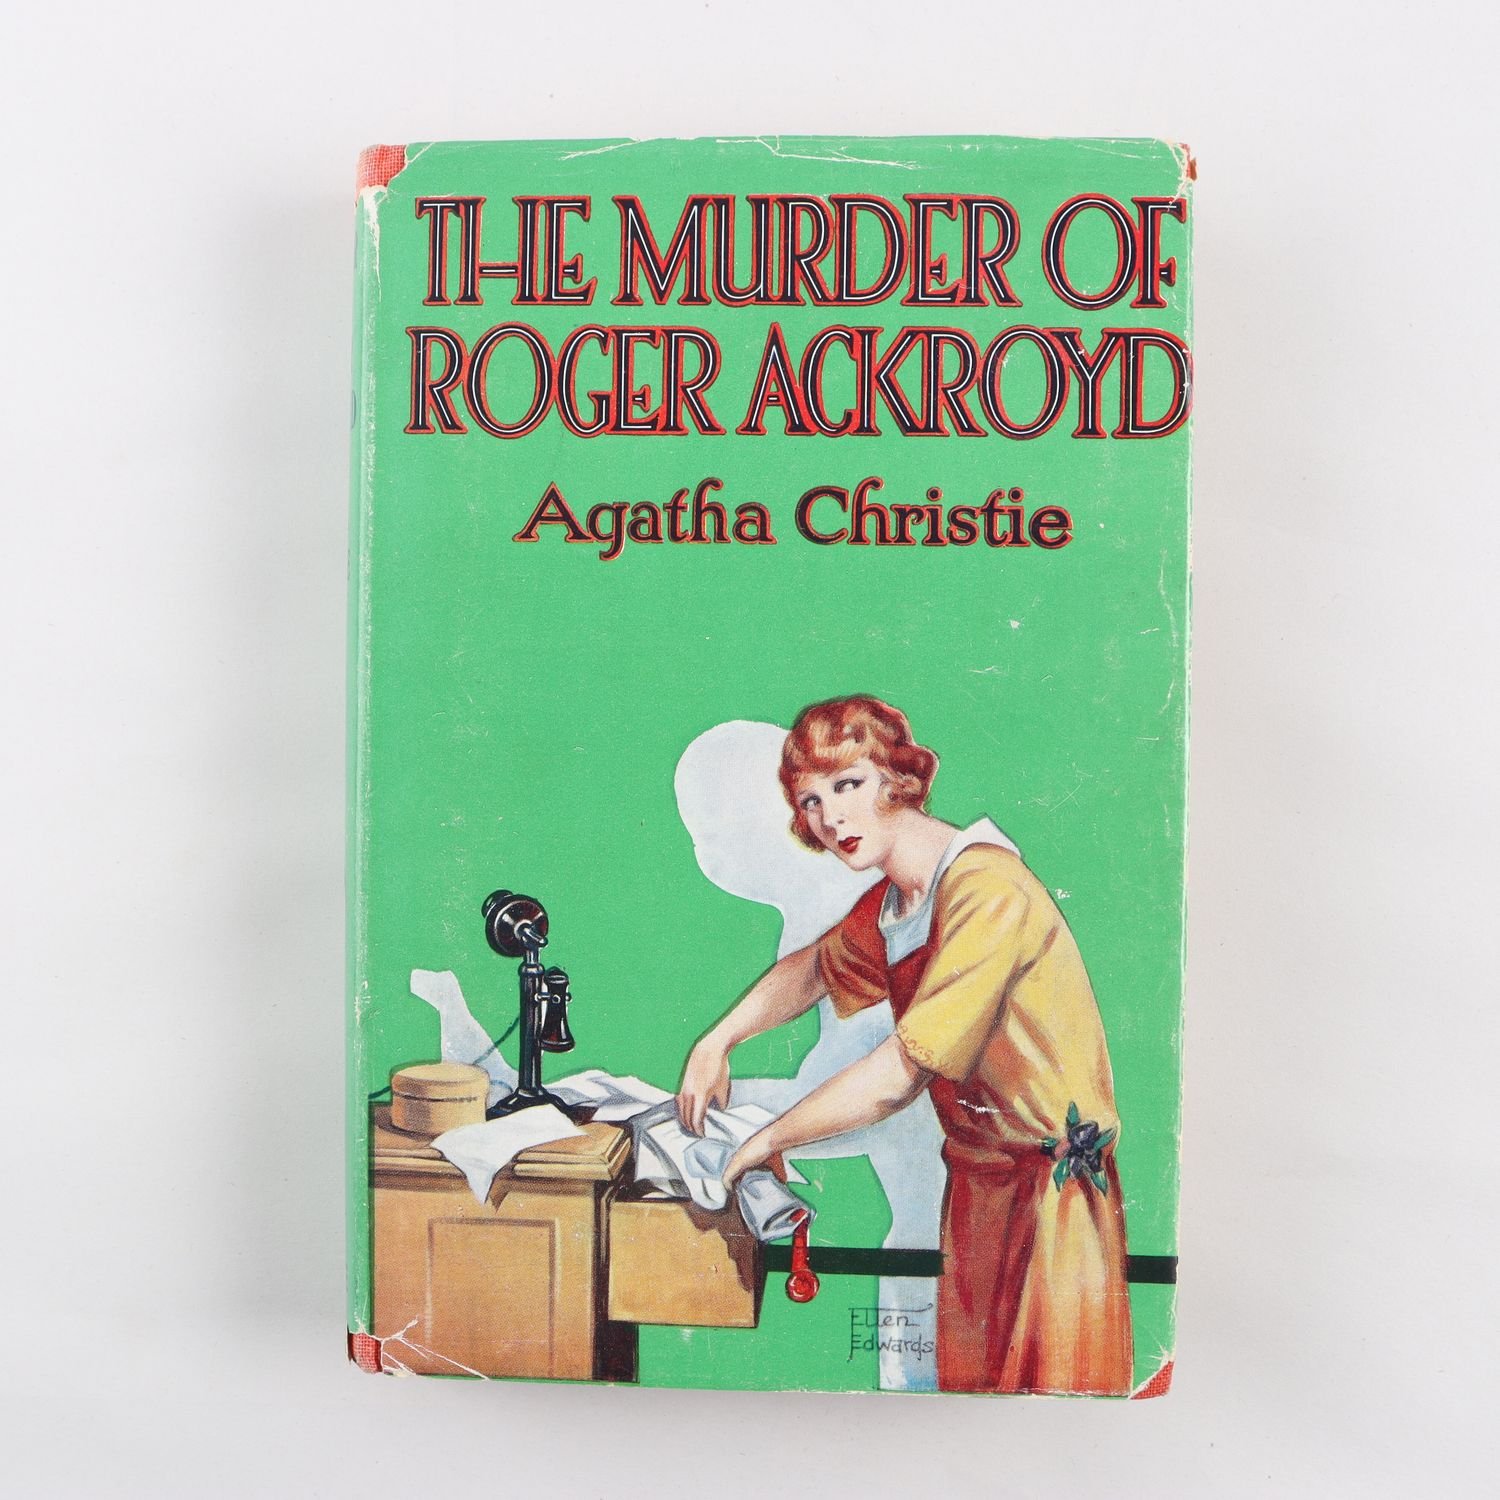 Agatha Christie, The Murder of Roger Ackroyd (19th Impression, 1950)